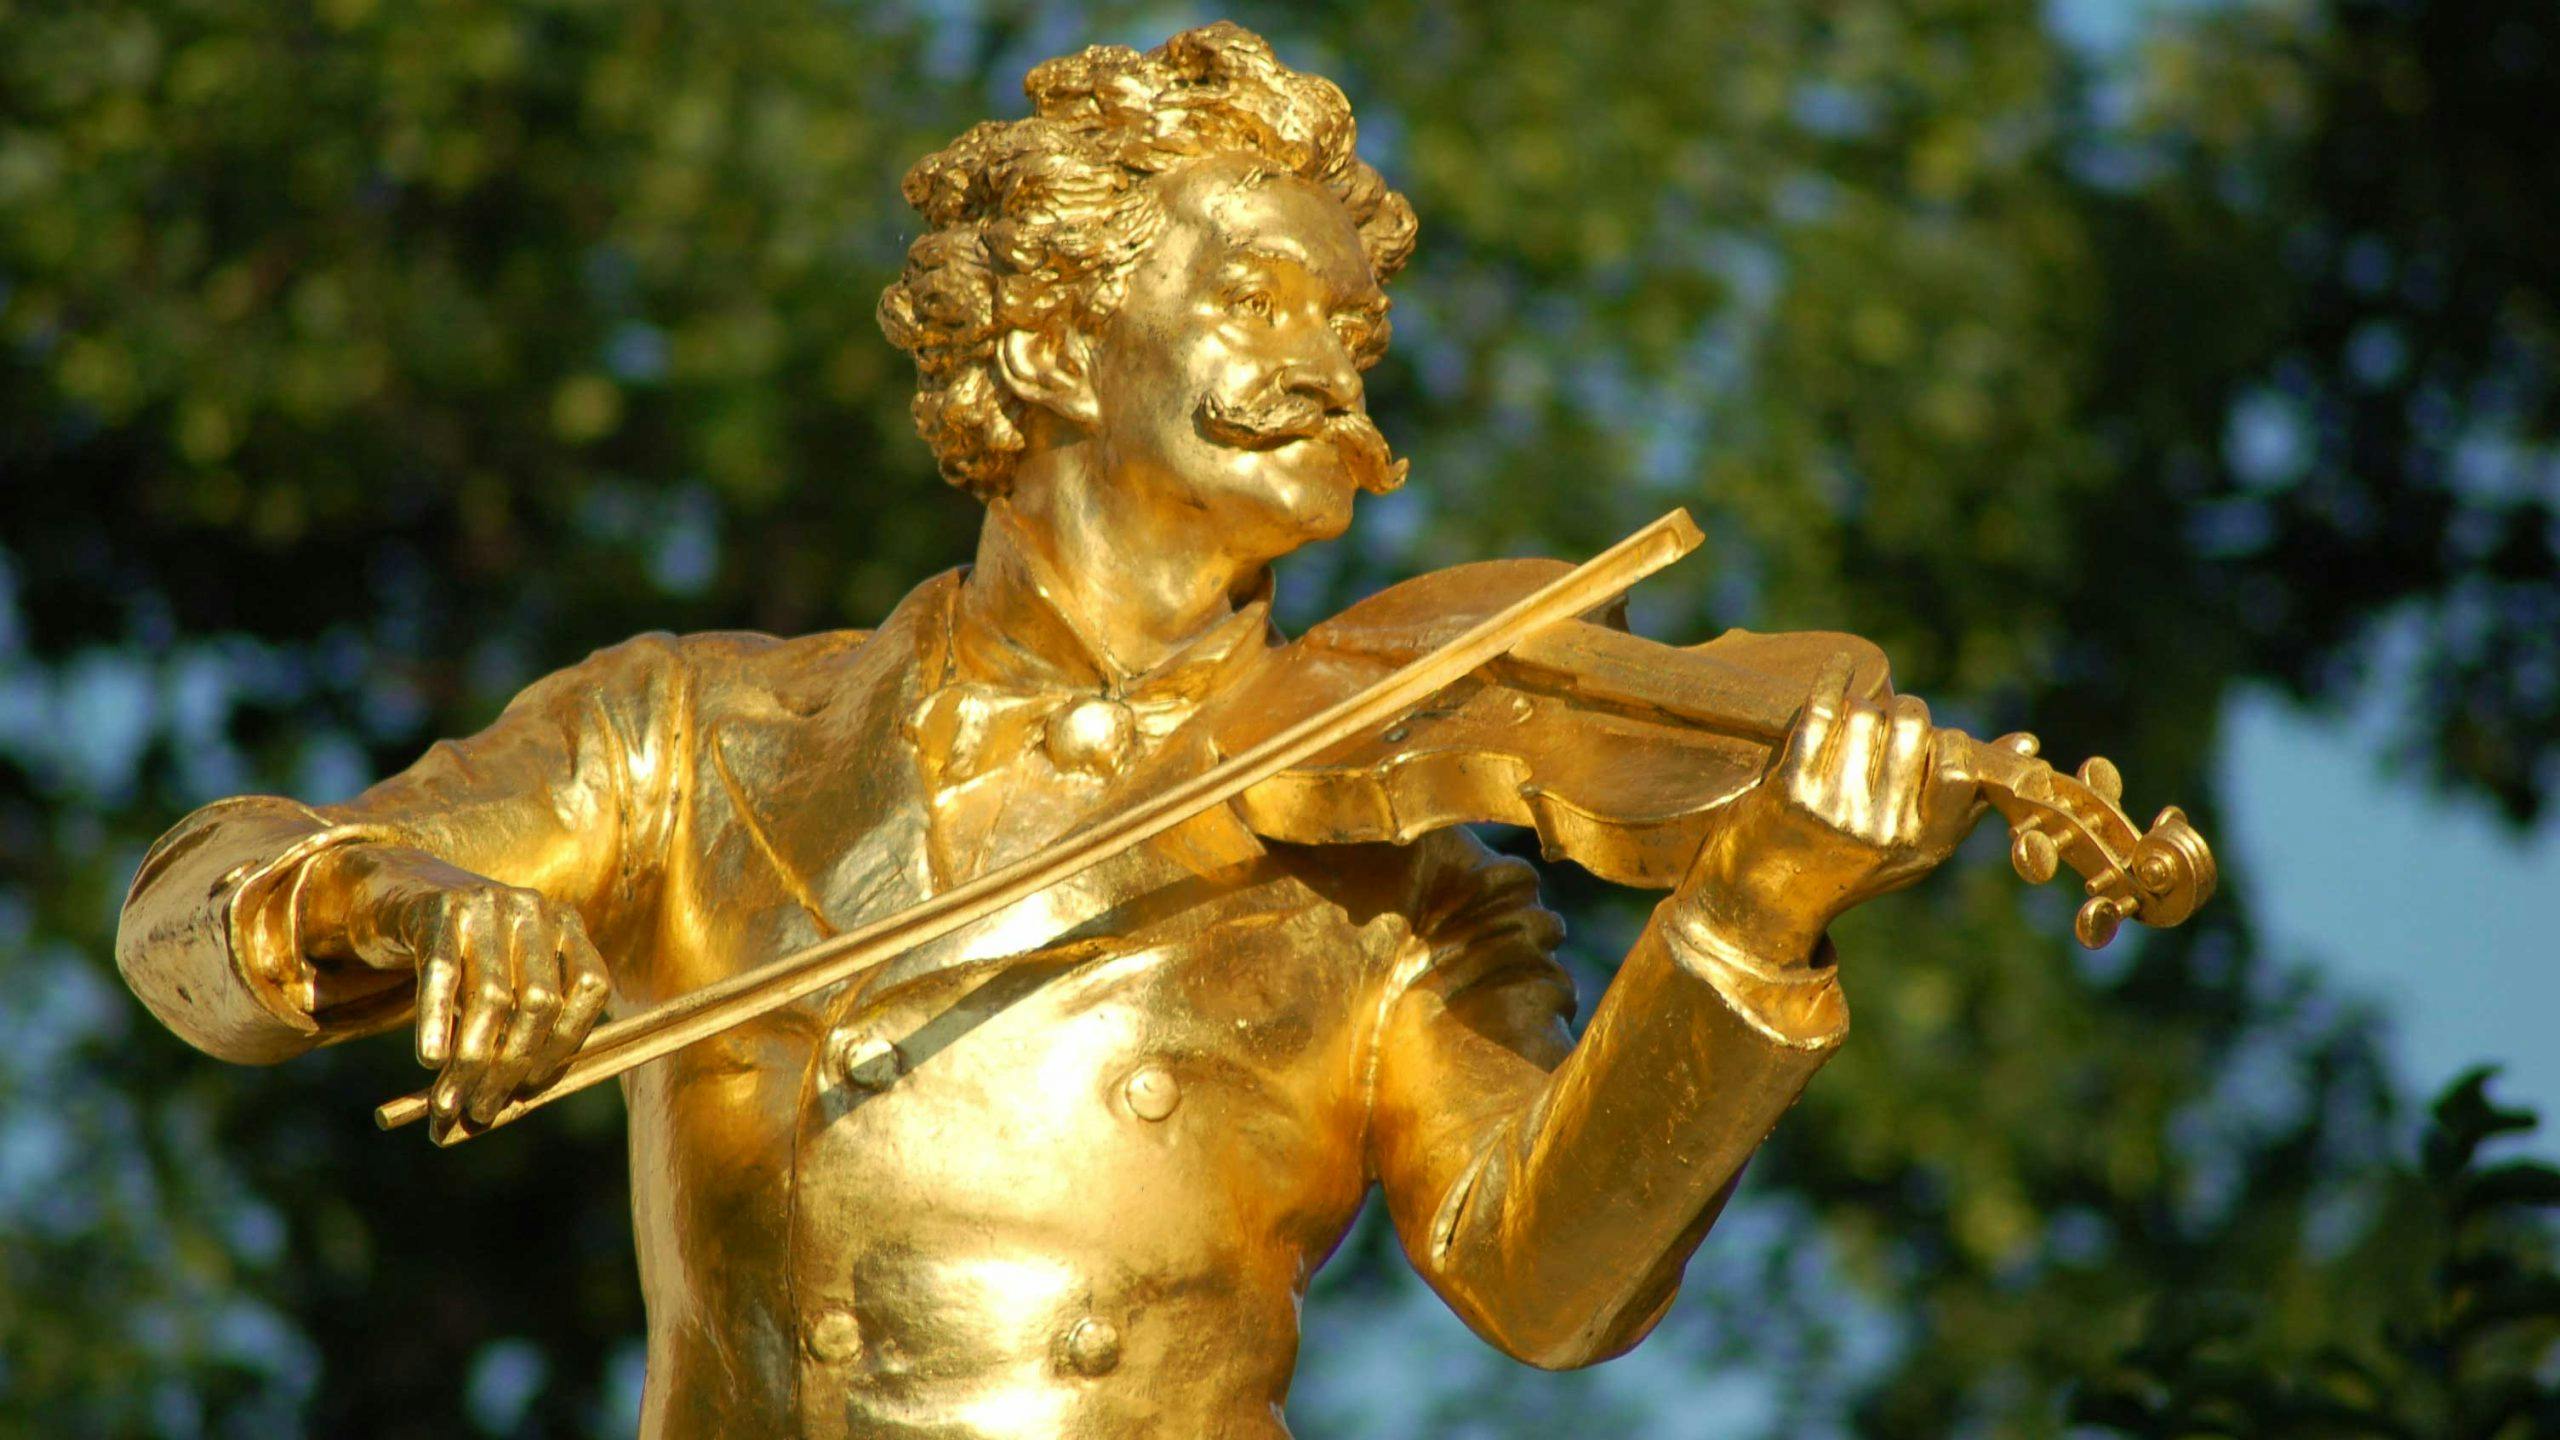 JOHANN STRAUSS & WALZER AUF DER BLAUEN DONAU - Ein historischer Abend mit dem Leben von Johann Strauss